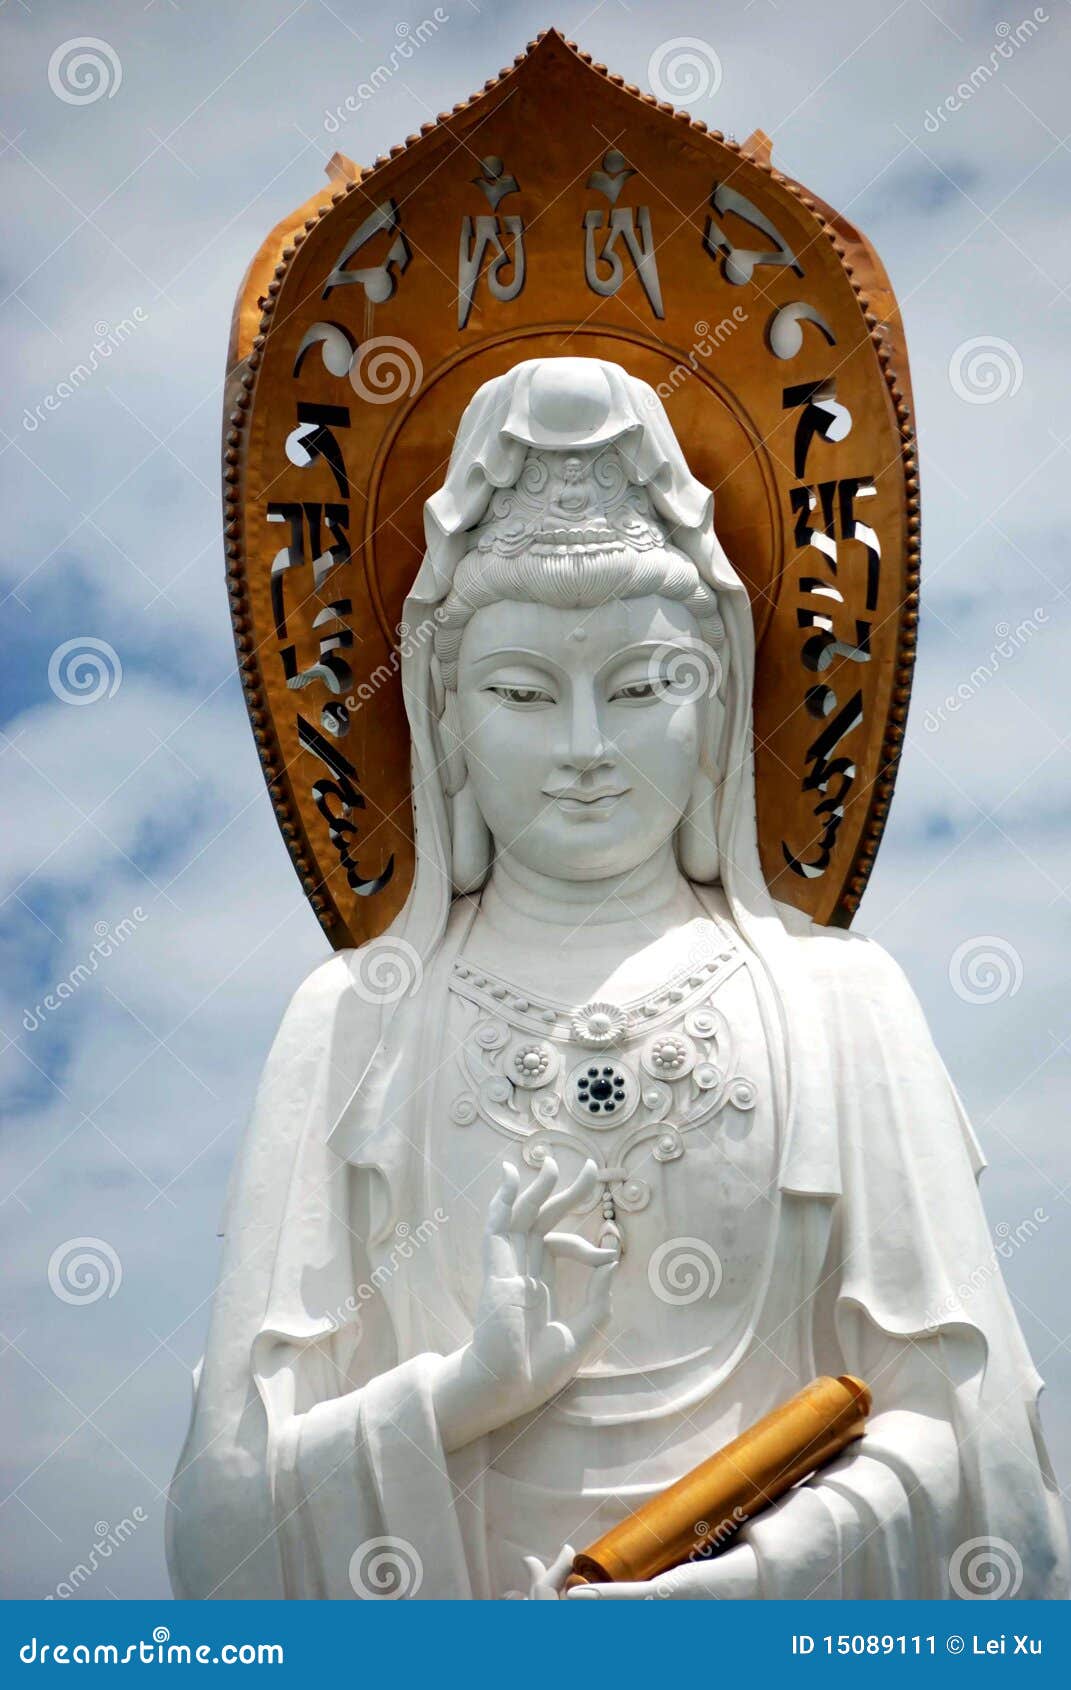 sanya, china: face of guan yin buddha